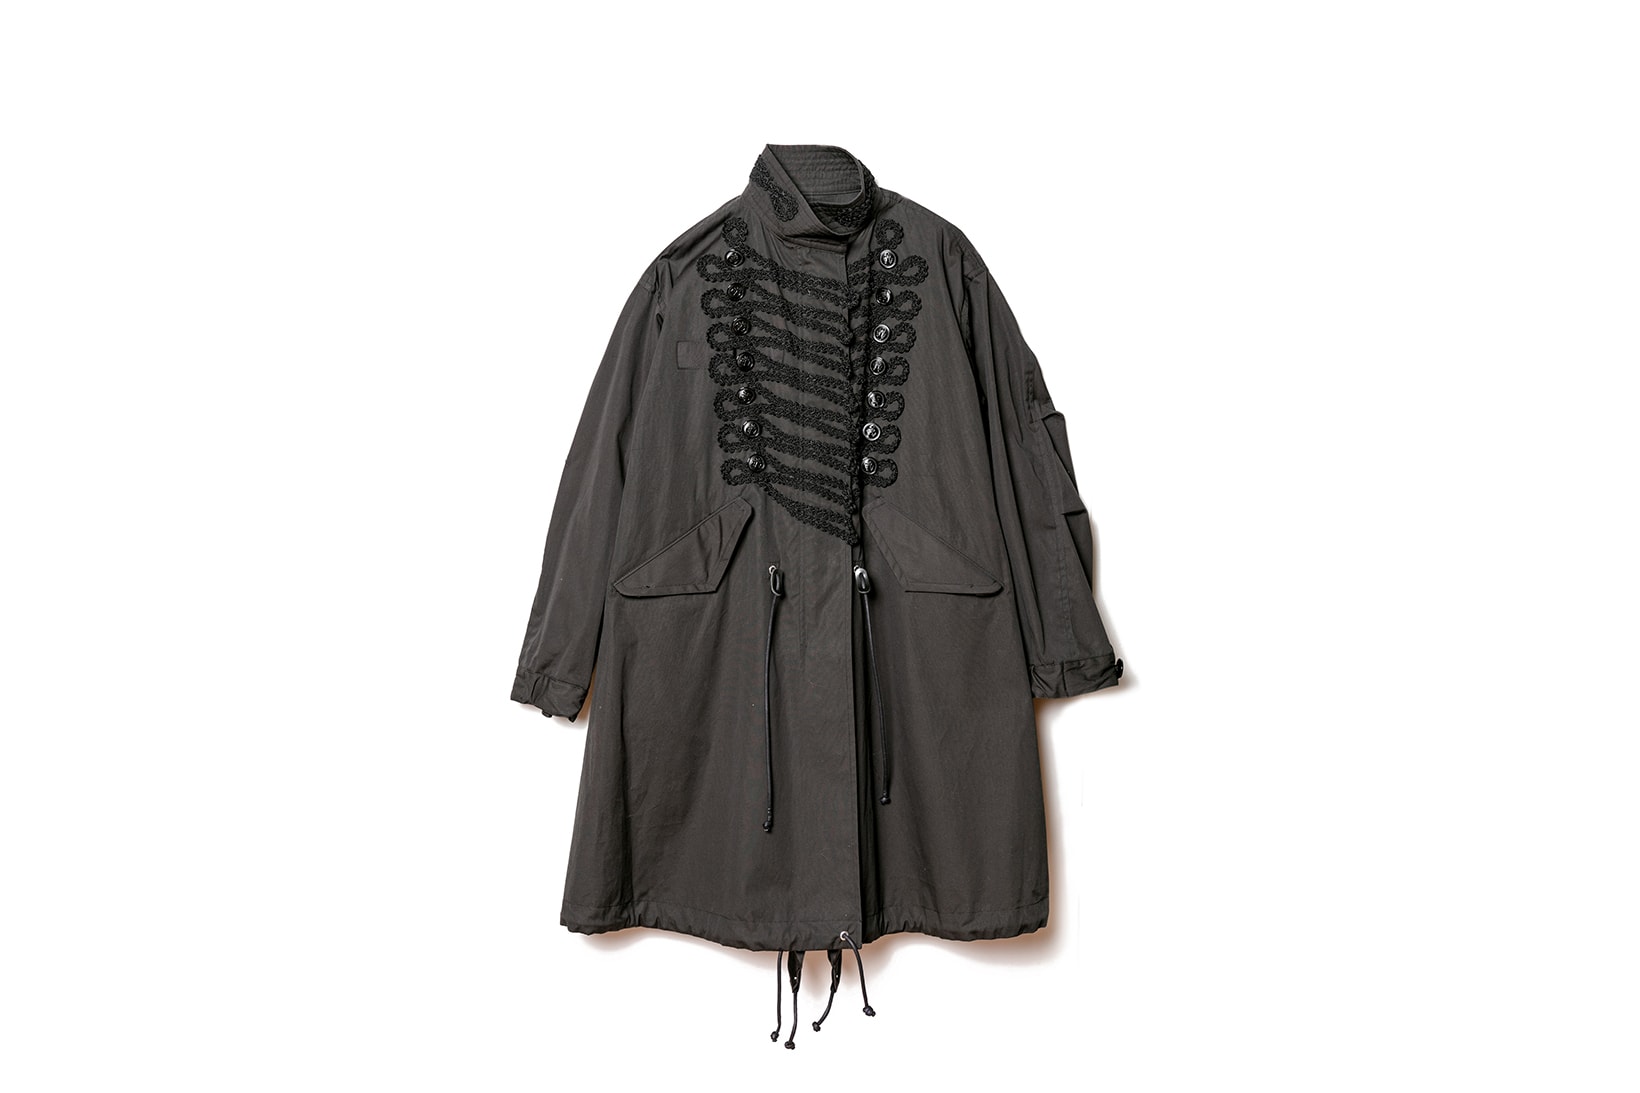 sacai dover street market exclusive napoleon jacket mods style coat black khaki outerwear fall winter